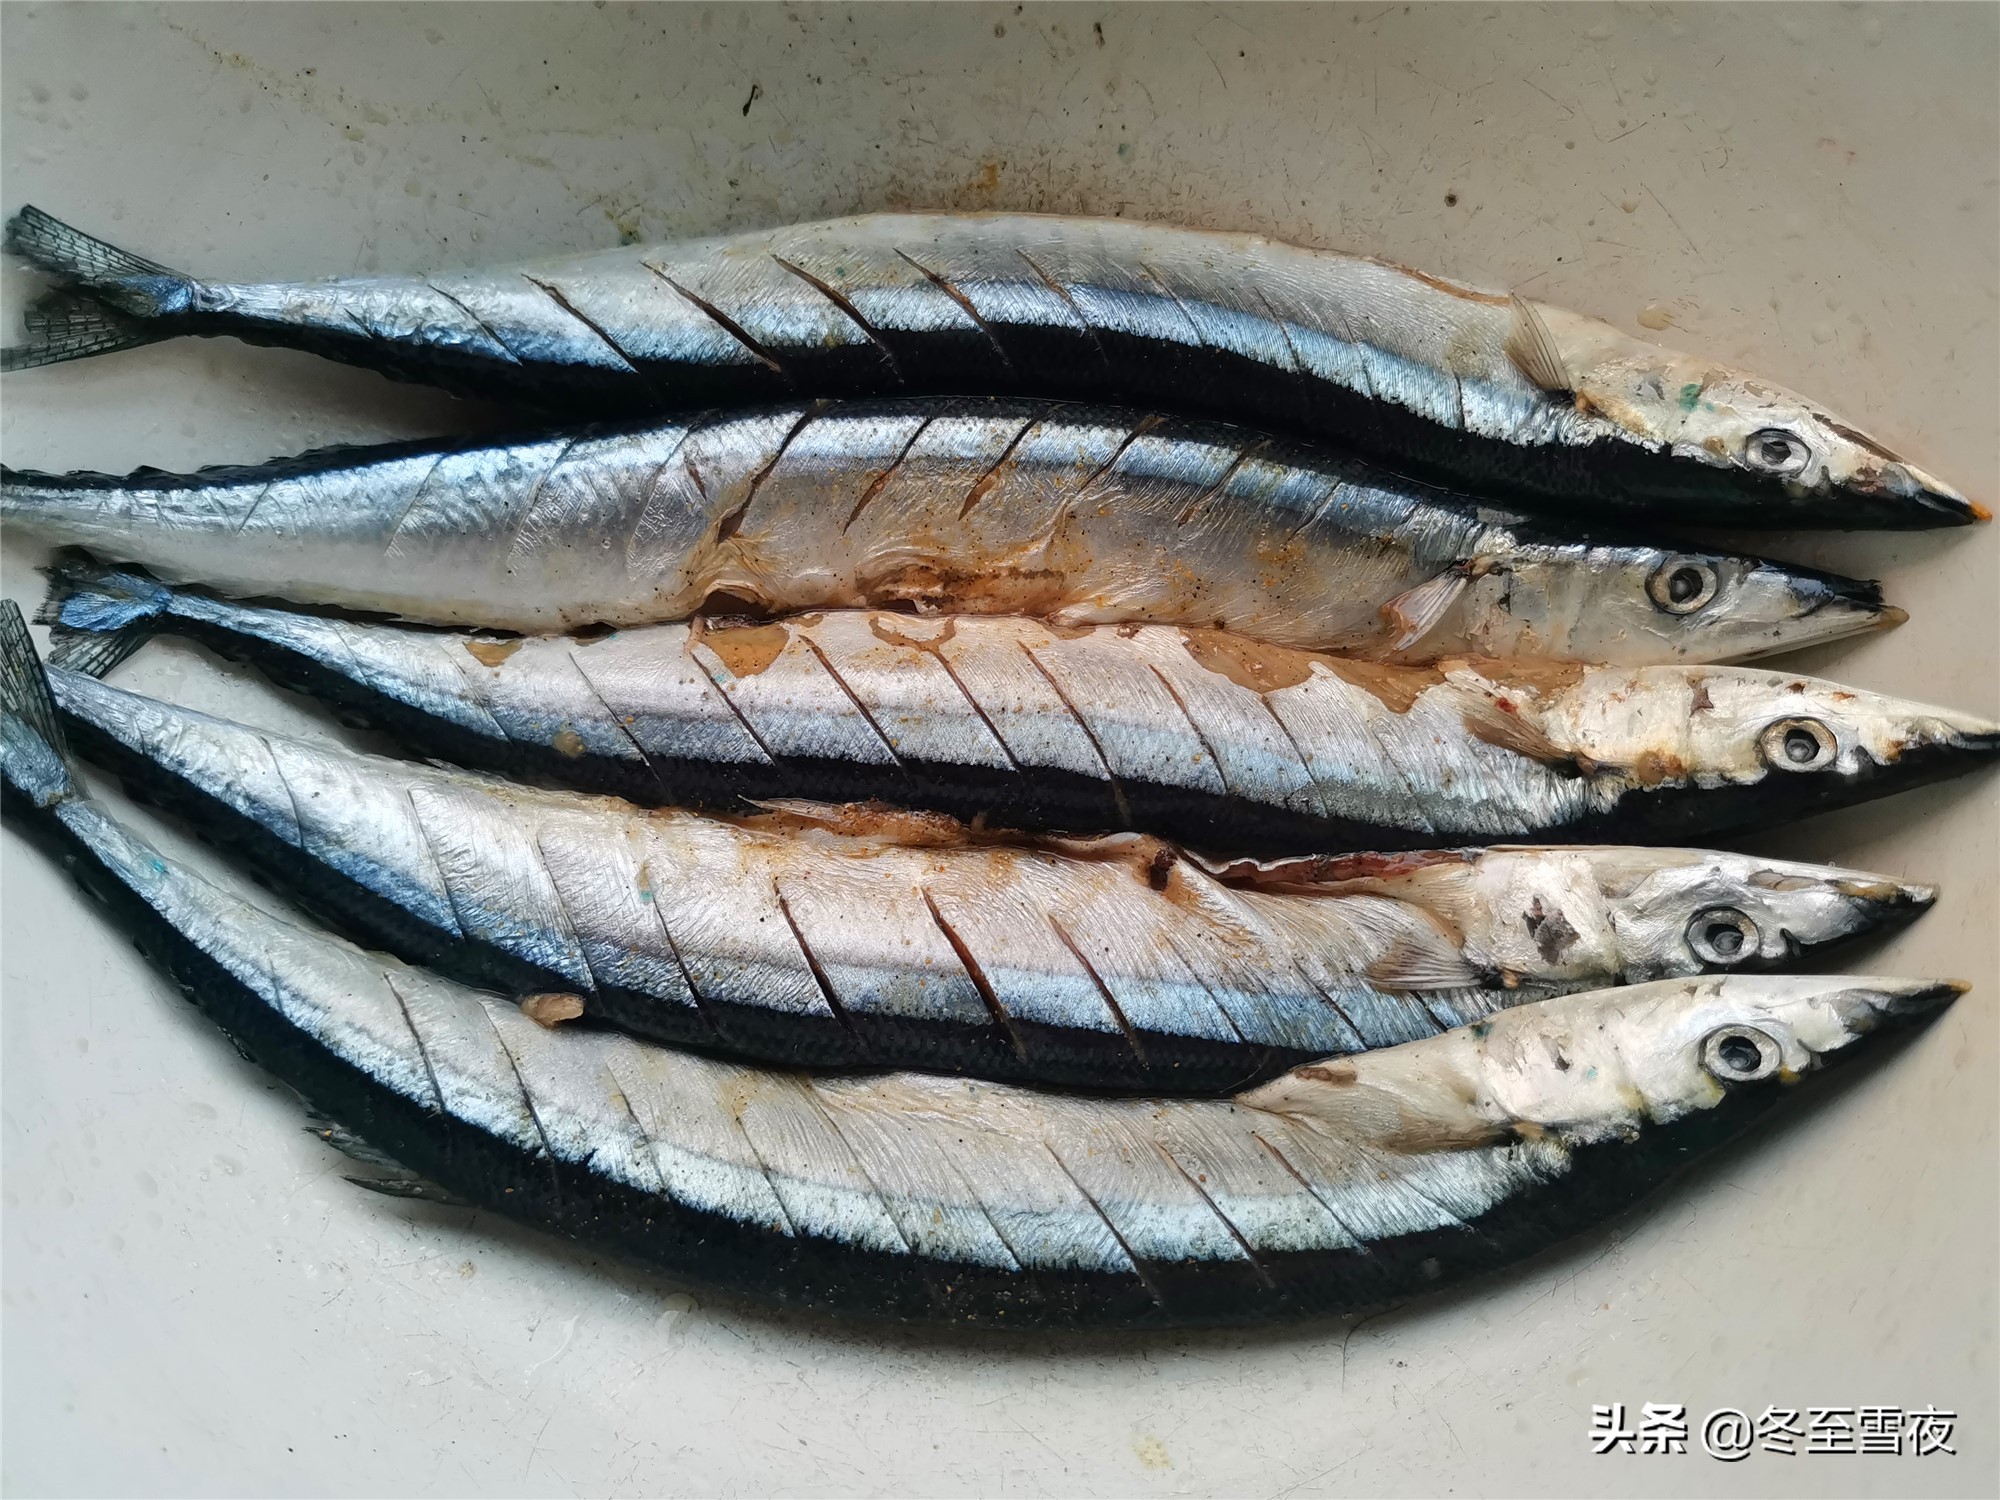 秋刀鱼的做法,秋刀鱼的做法,最好吃又简单